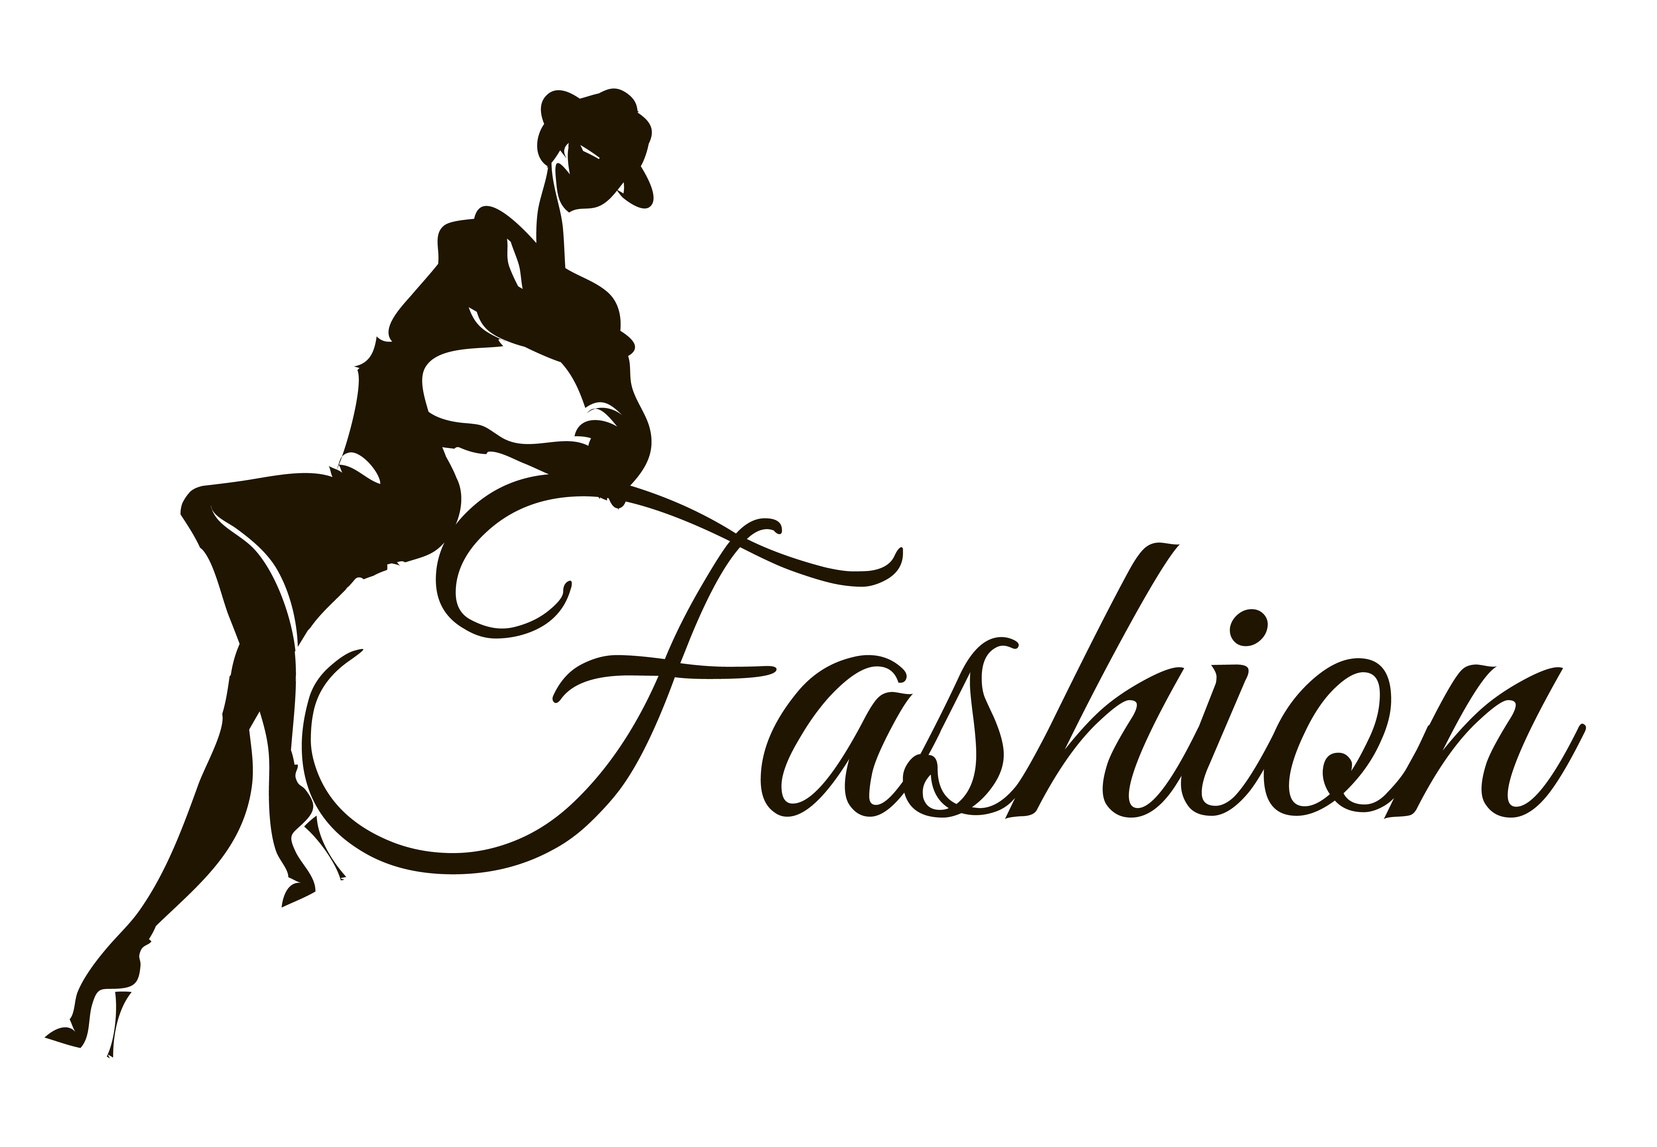 5 Essential Fashion Logo Design Tips • Online Logo Maker's Blog